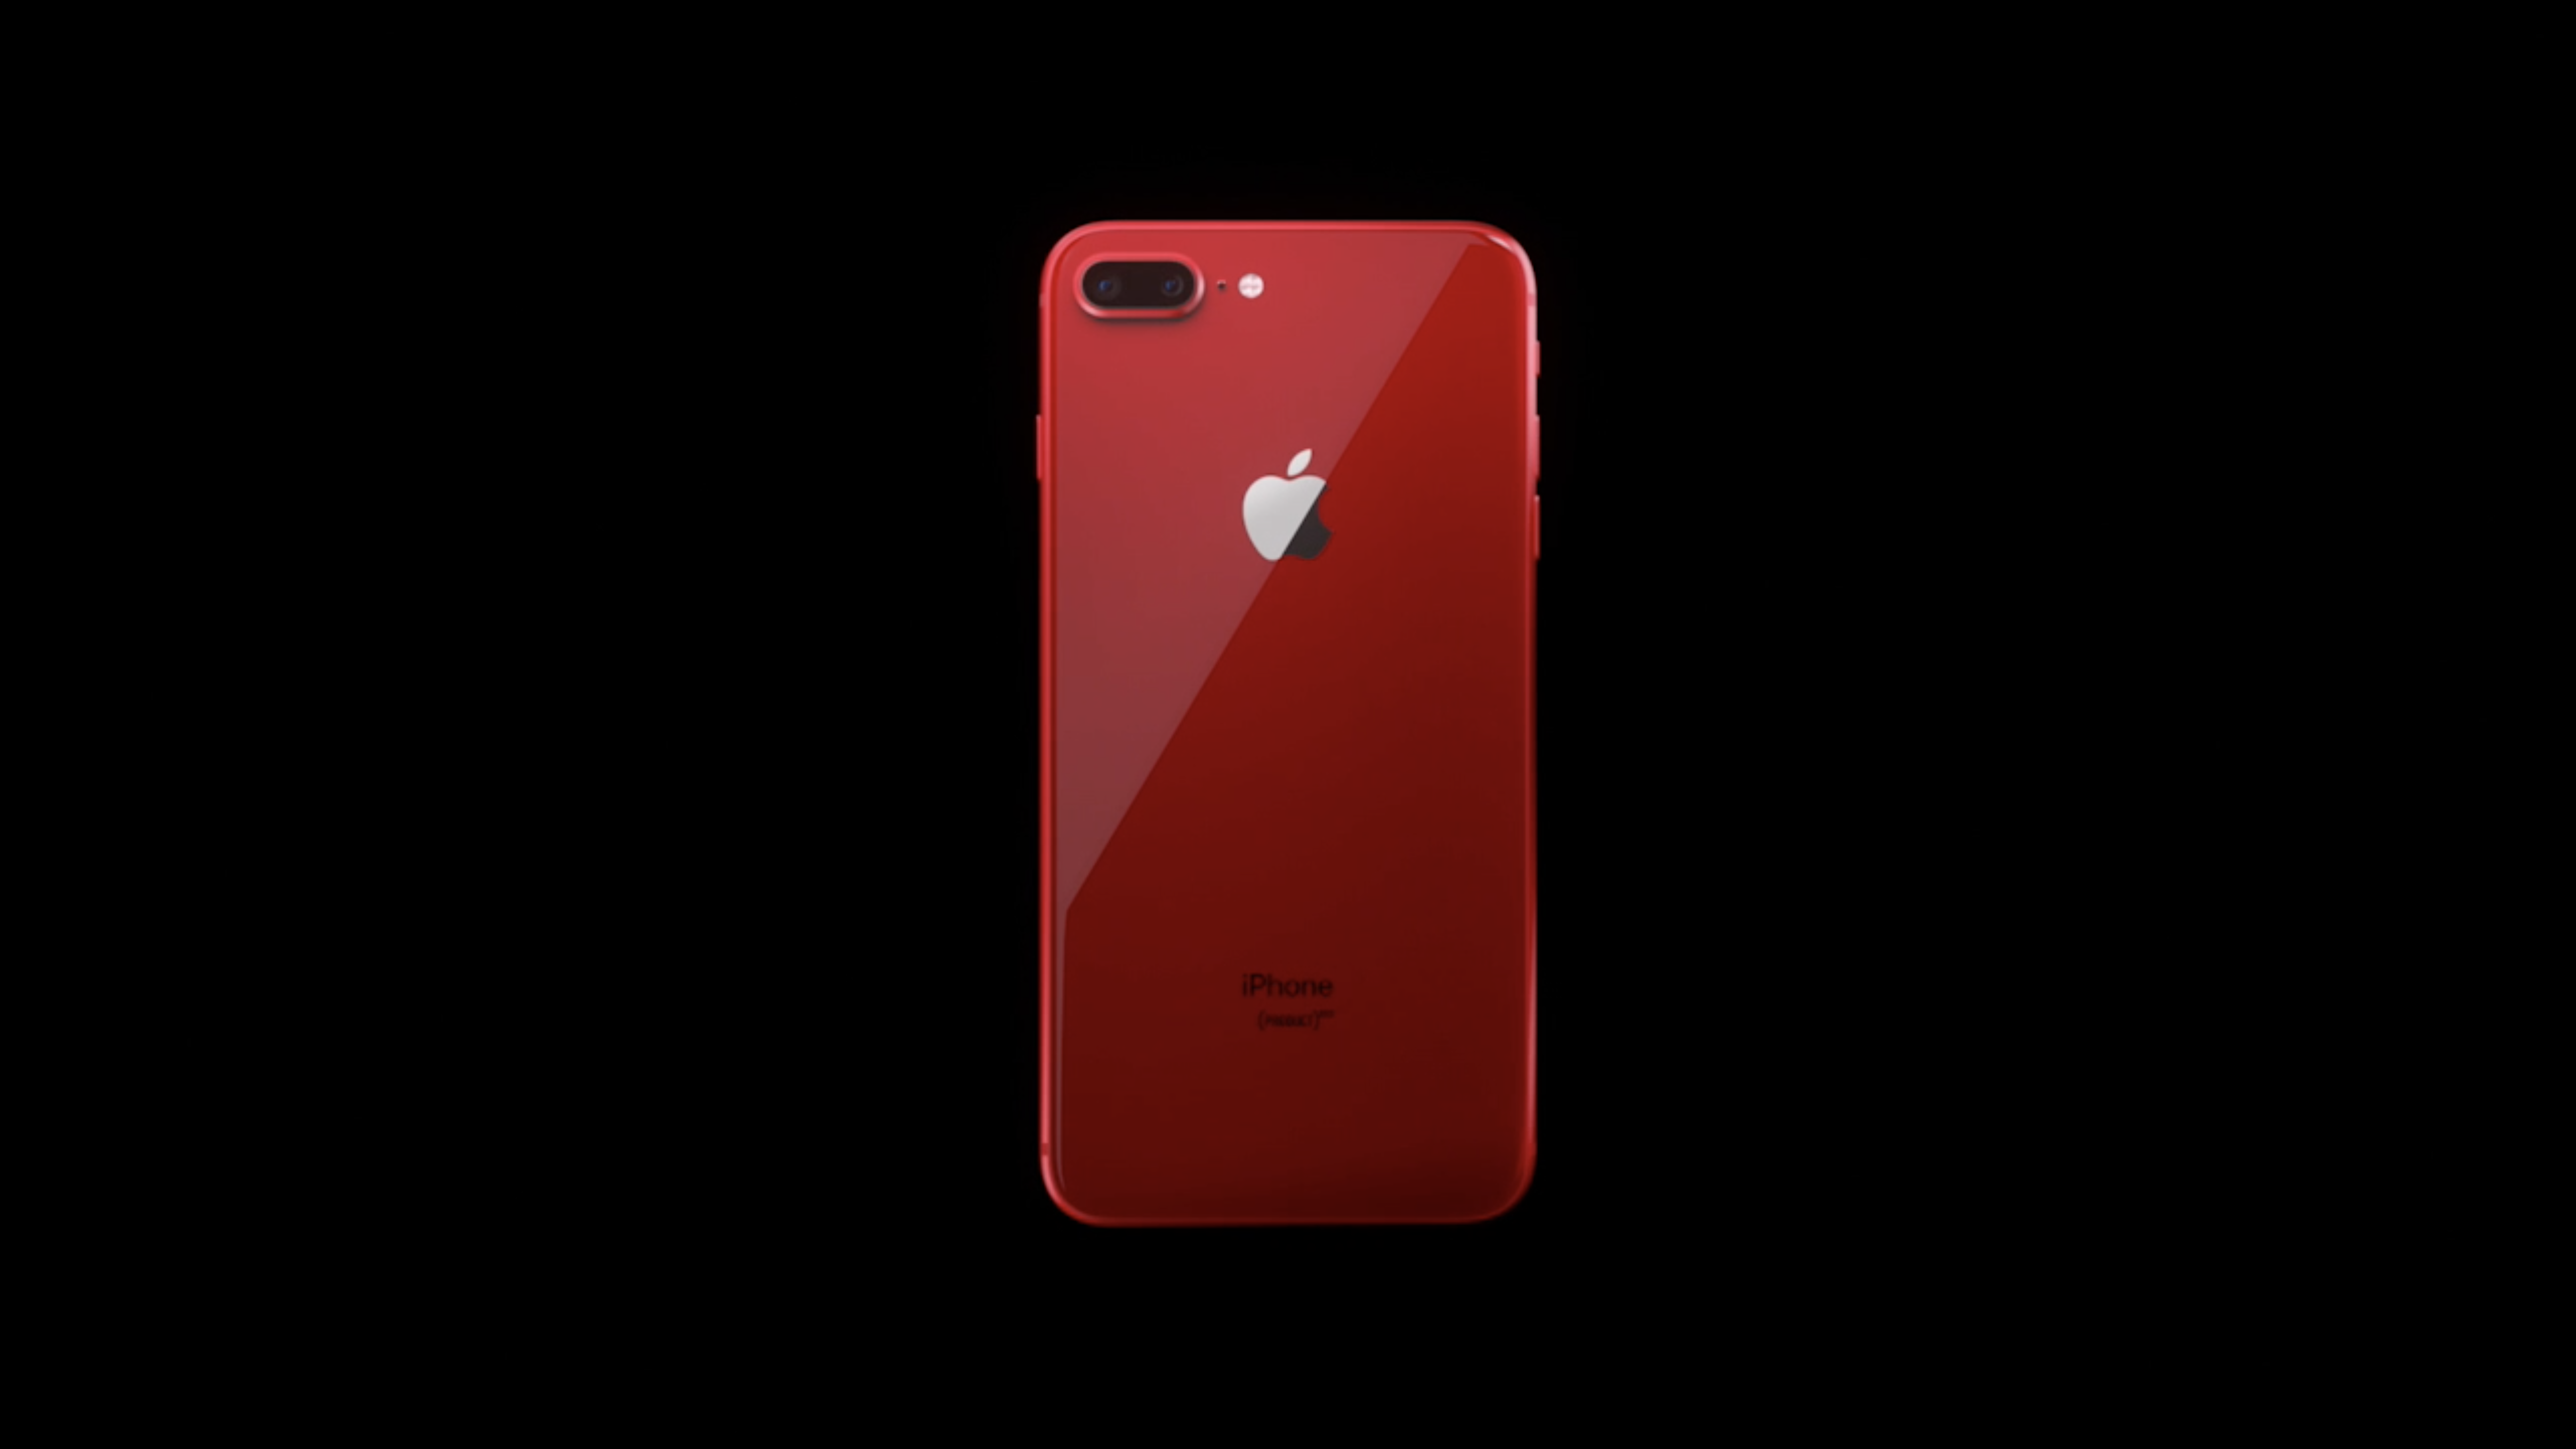 Красный телефон айфон. Apple iphone 8 Plus красный. Iphone 8 Plus product Red and iphone 8. Iphone 8 product Red. Iphone 8+ product Red.